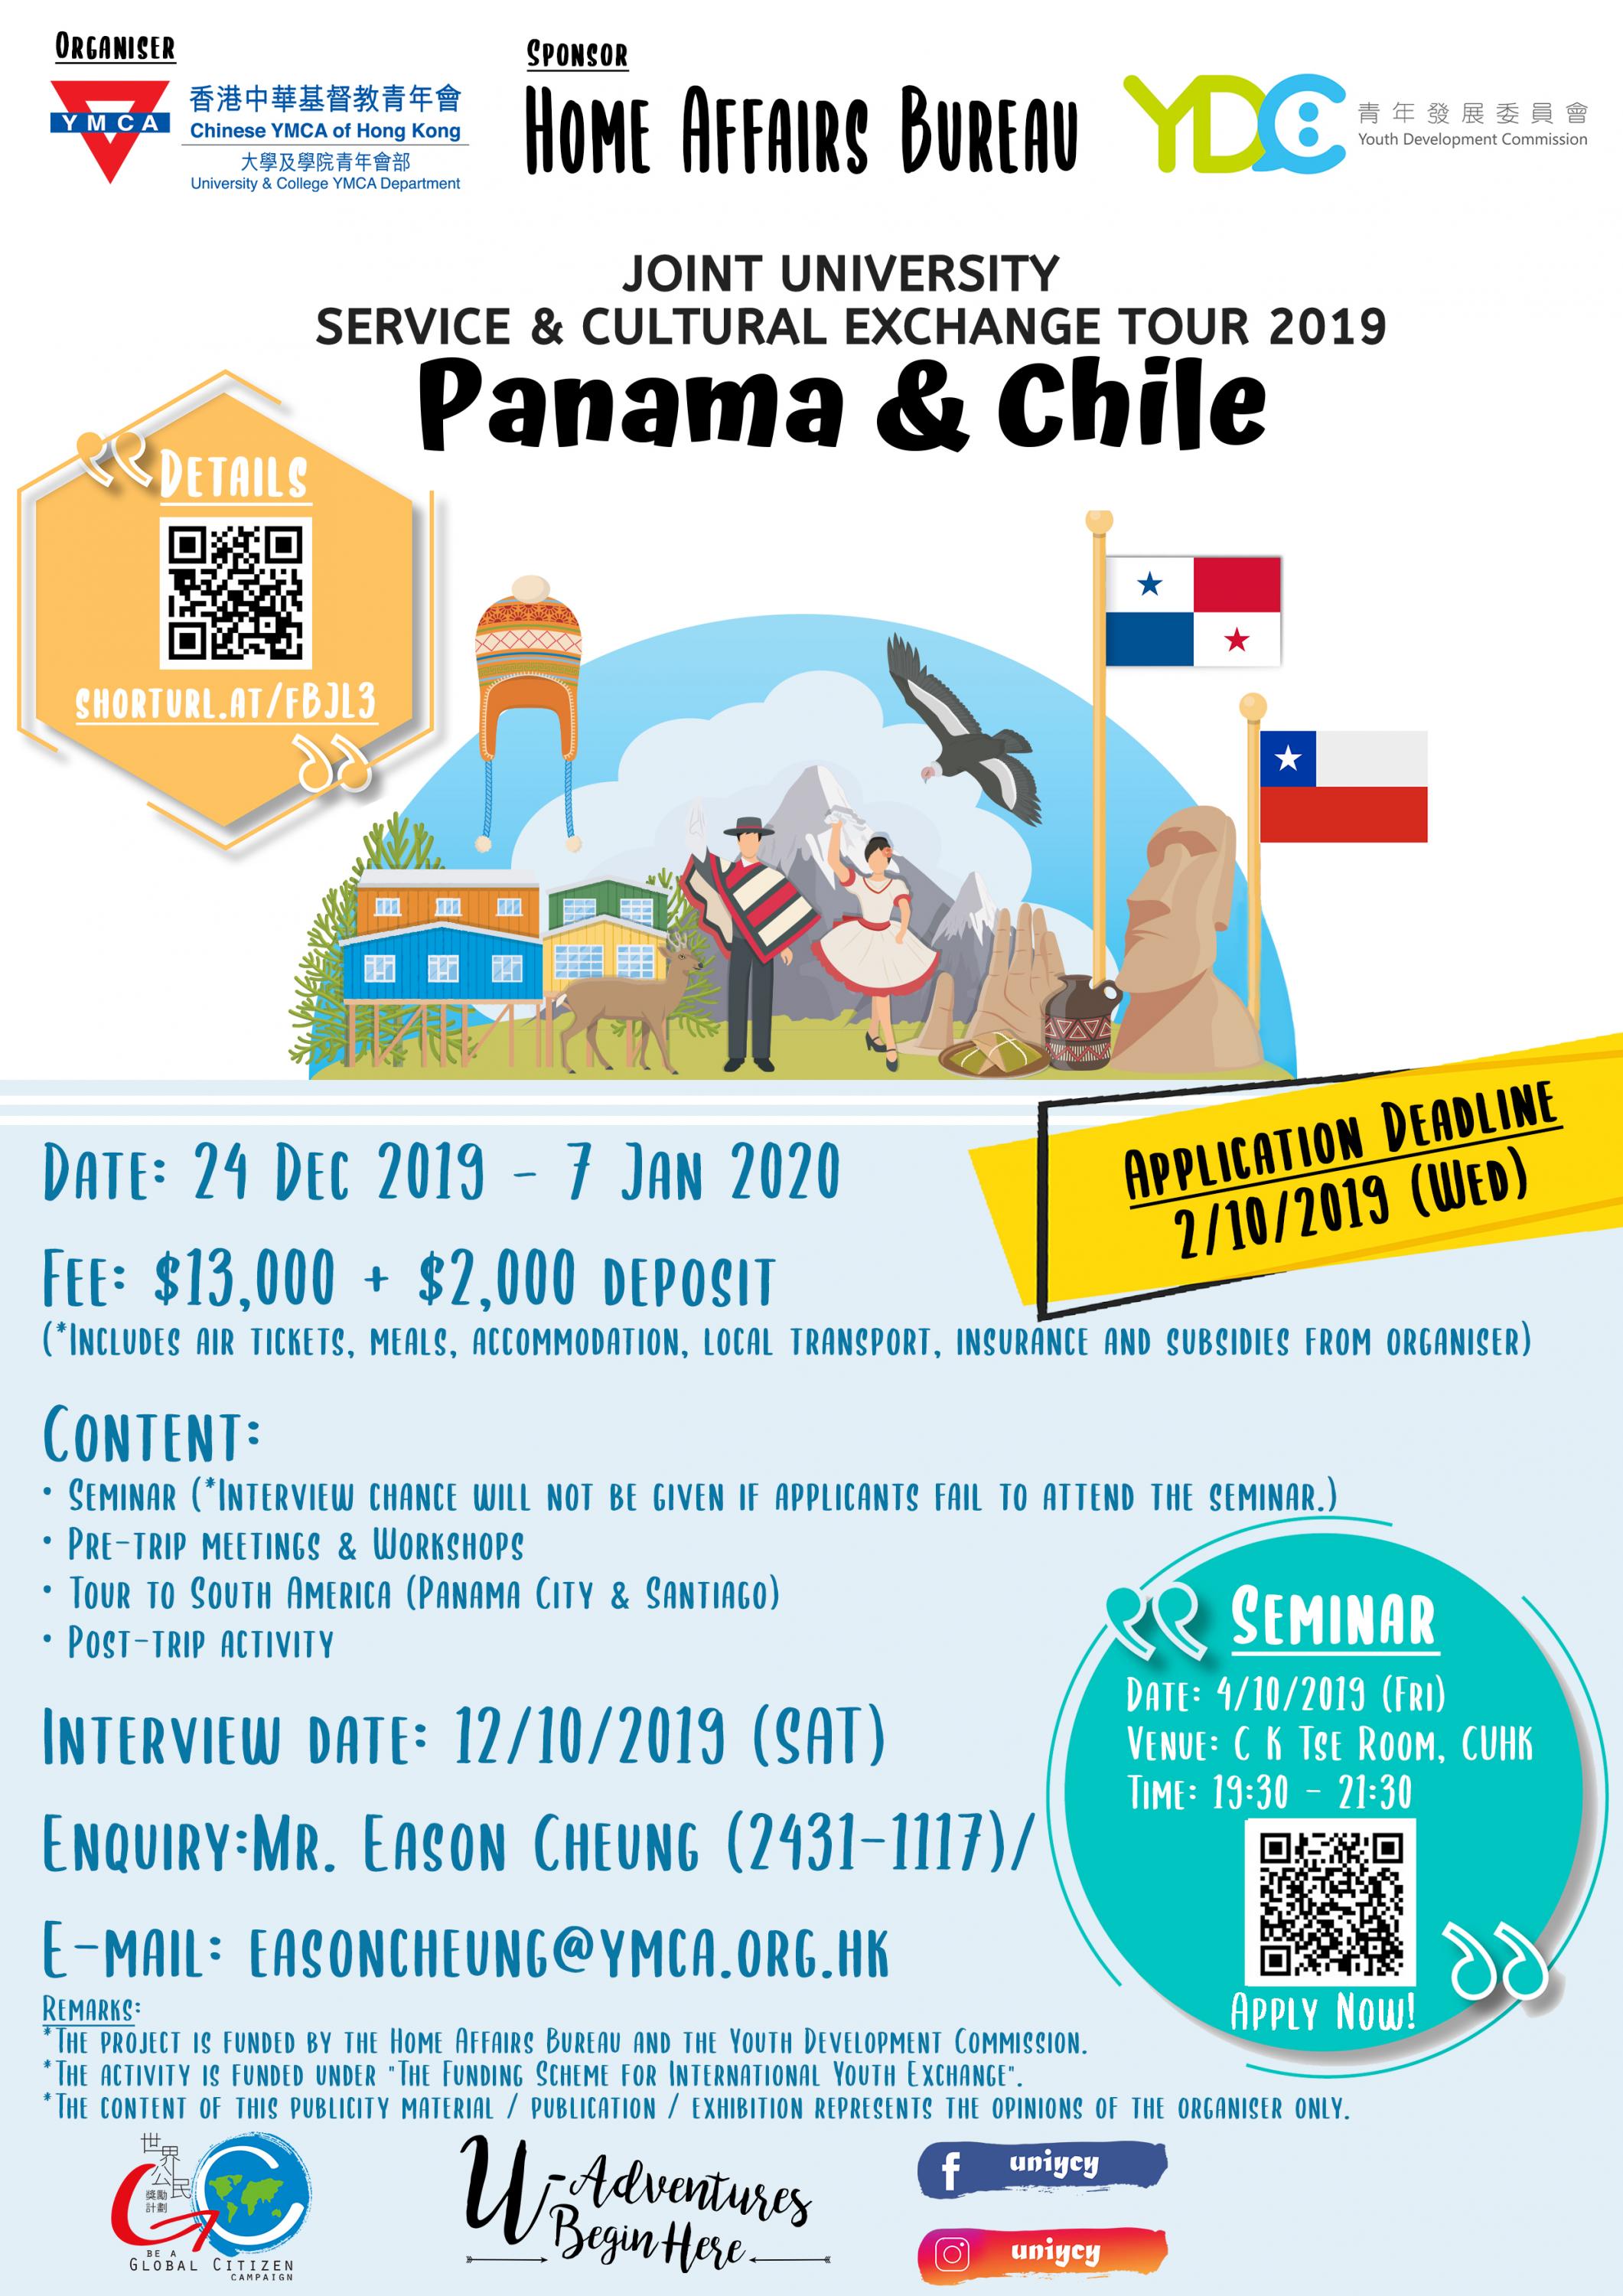 拉美深度遊 – 聯校巴拿馬、智利服務文化交流團